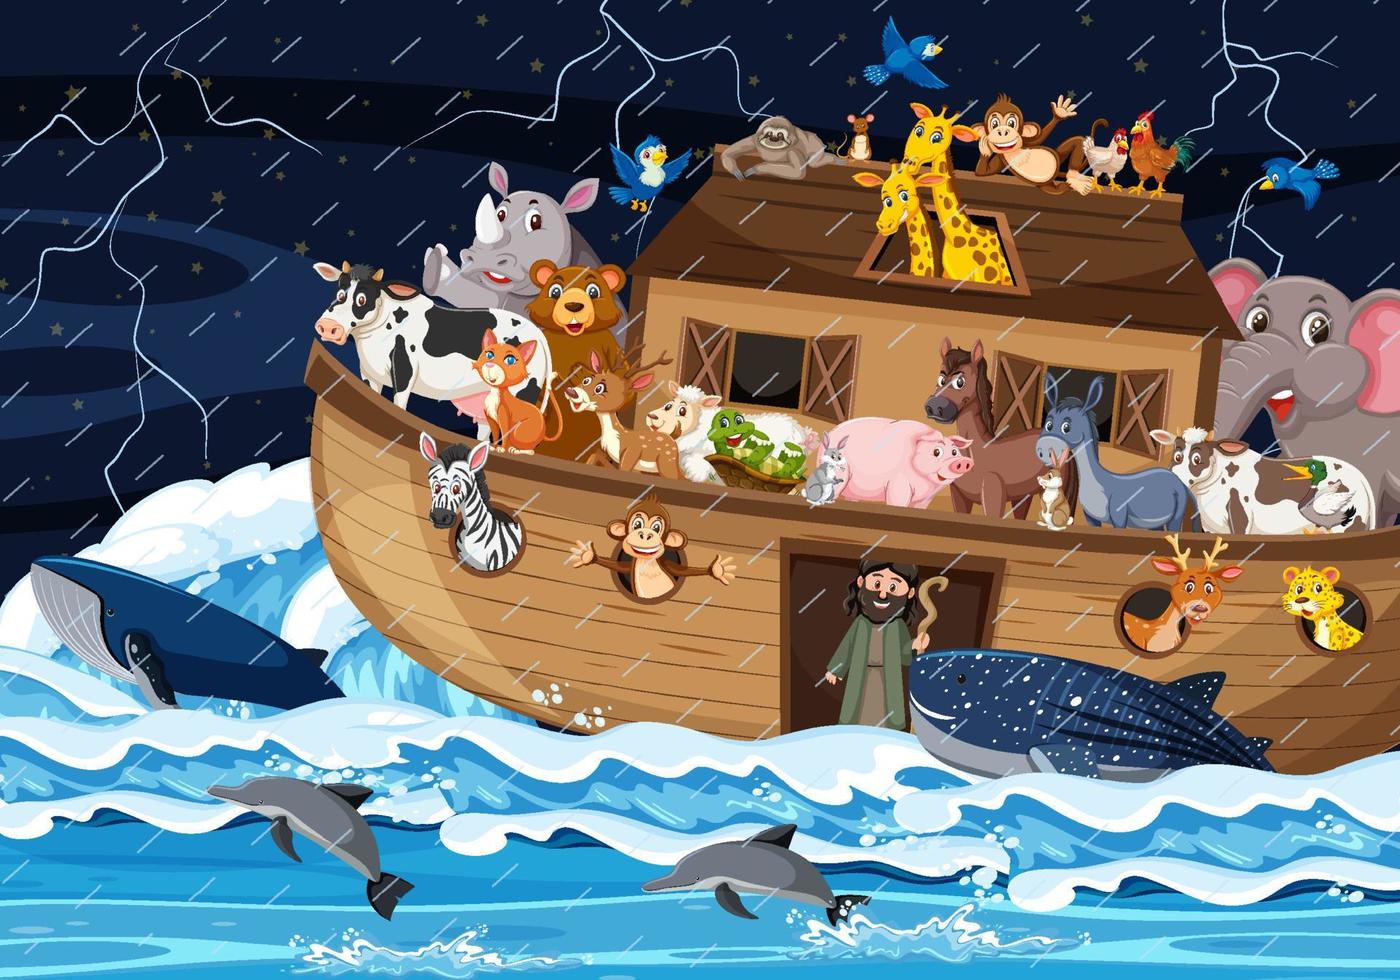 Ocean scene with Noah's ark with animals vector